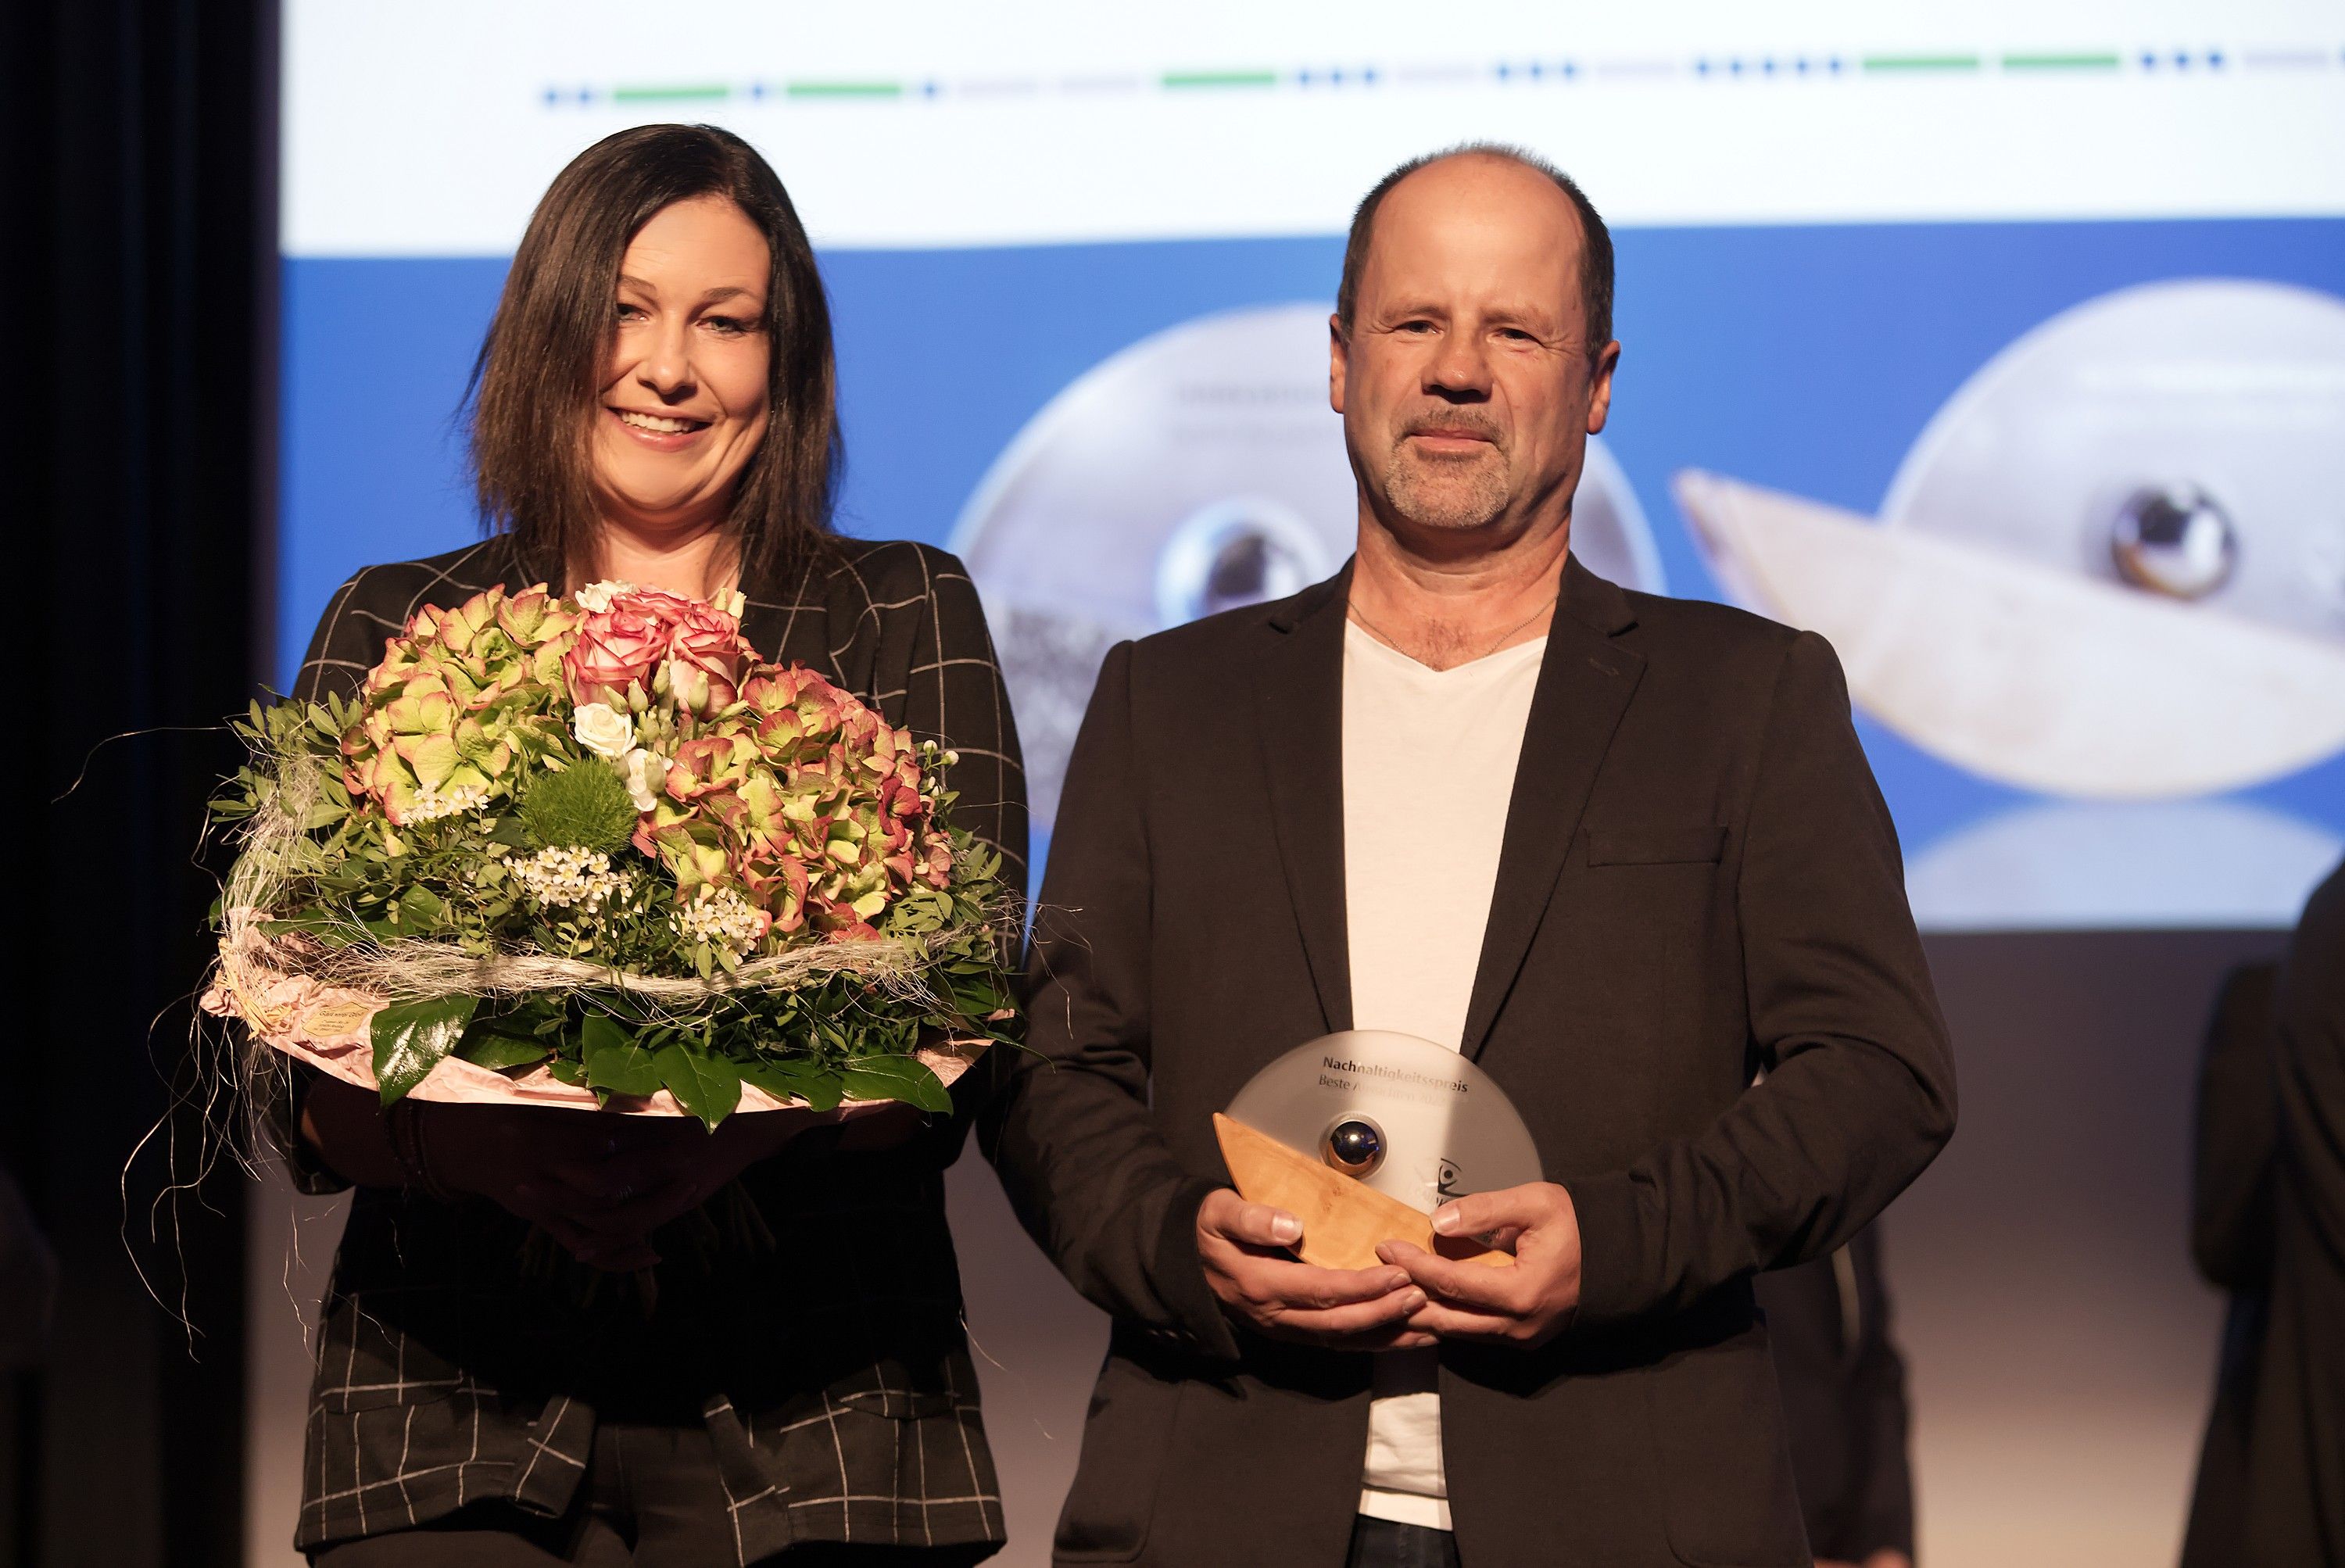 Derzeit können Vorschläge gemacht werden, wer ebenso wie die Preisträger Freddy und Ilona Weber von der Fa. Elektrotechnik Weber den Nachhaltigkeitspreis verdient hätte